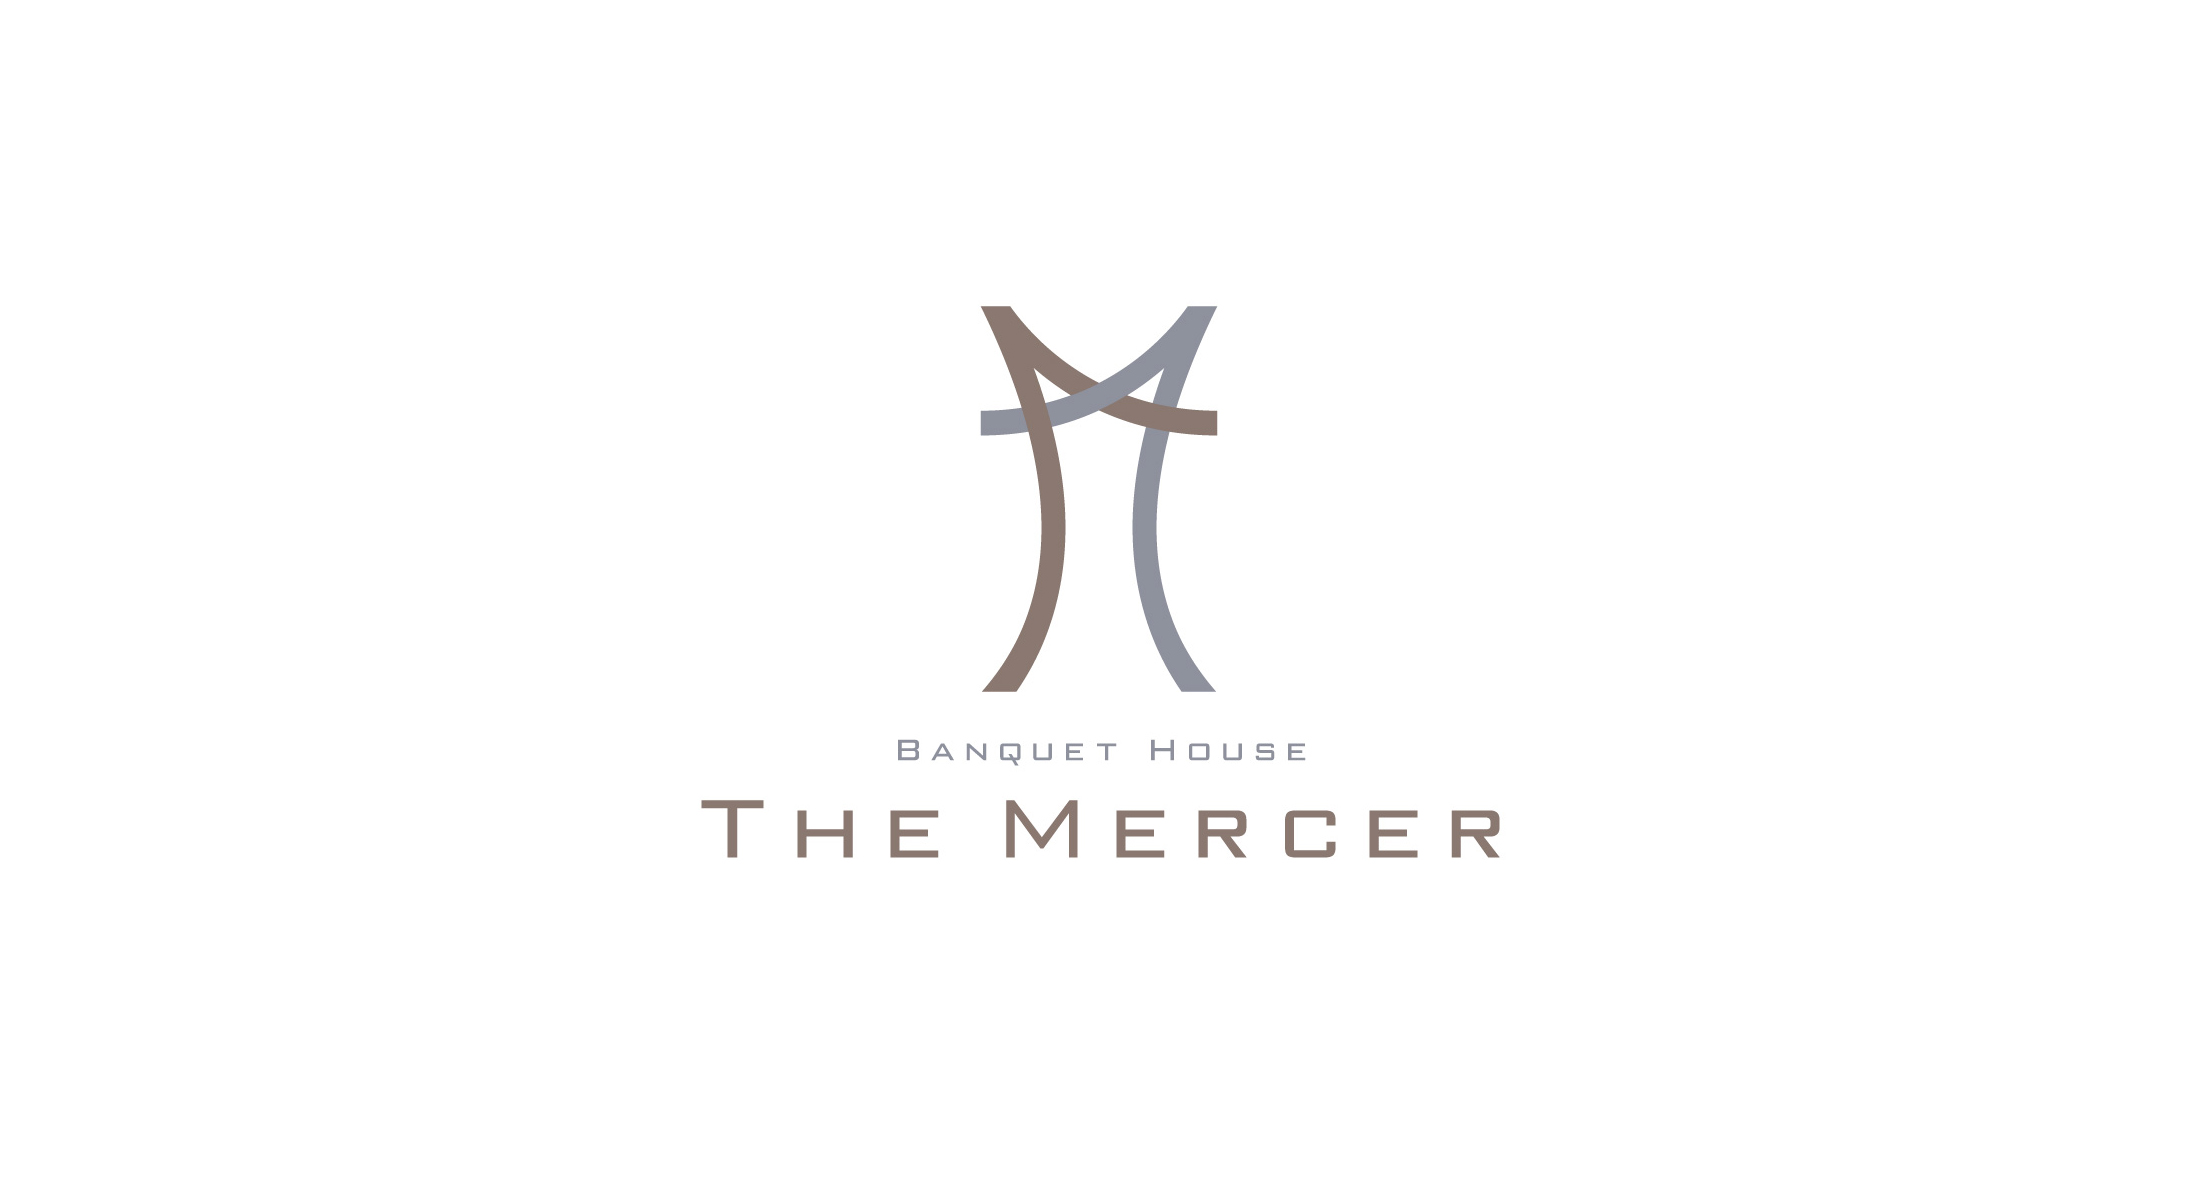 THE MERCER